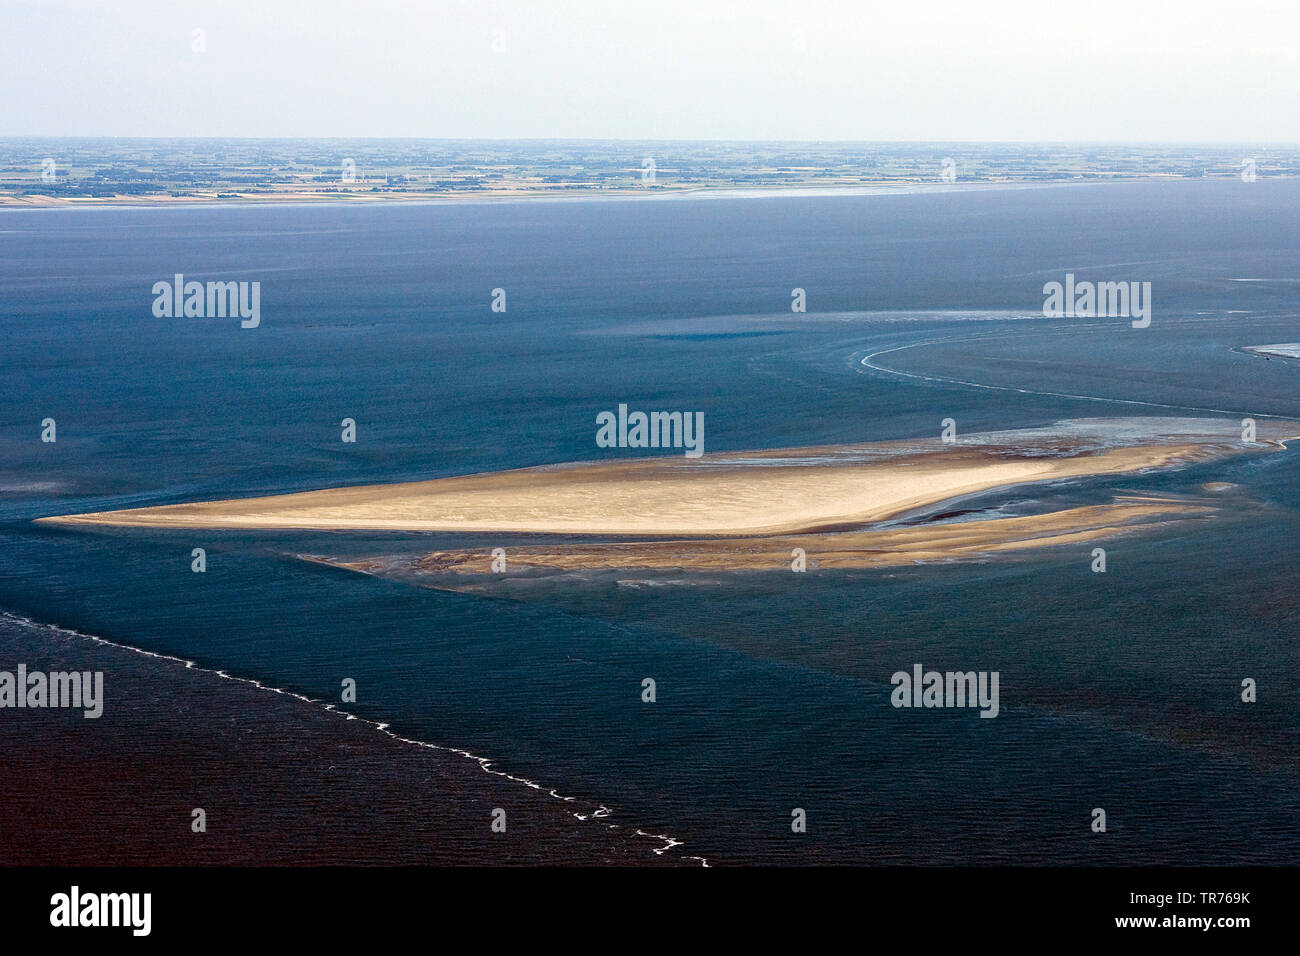 Banco di sabbia nel mare del Nord, foto aerea, Paesi Bassi Foto Stock